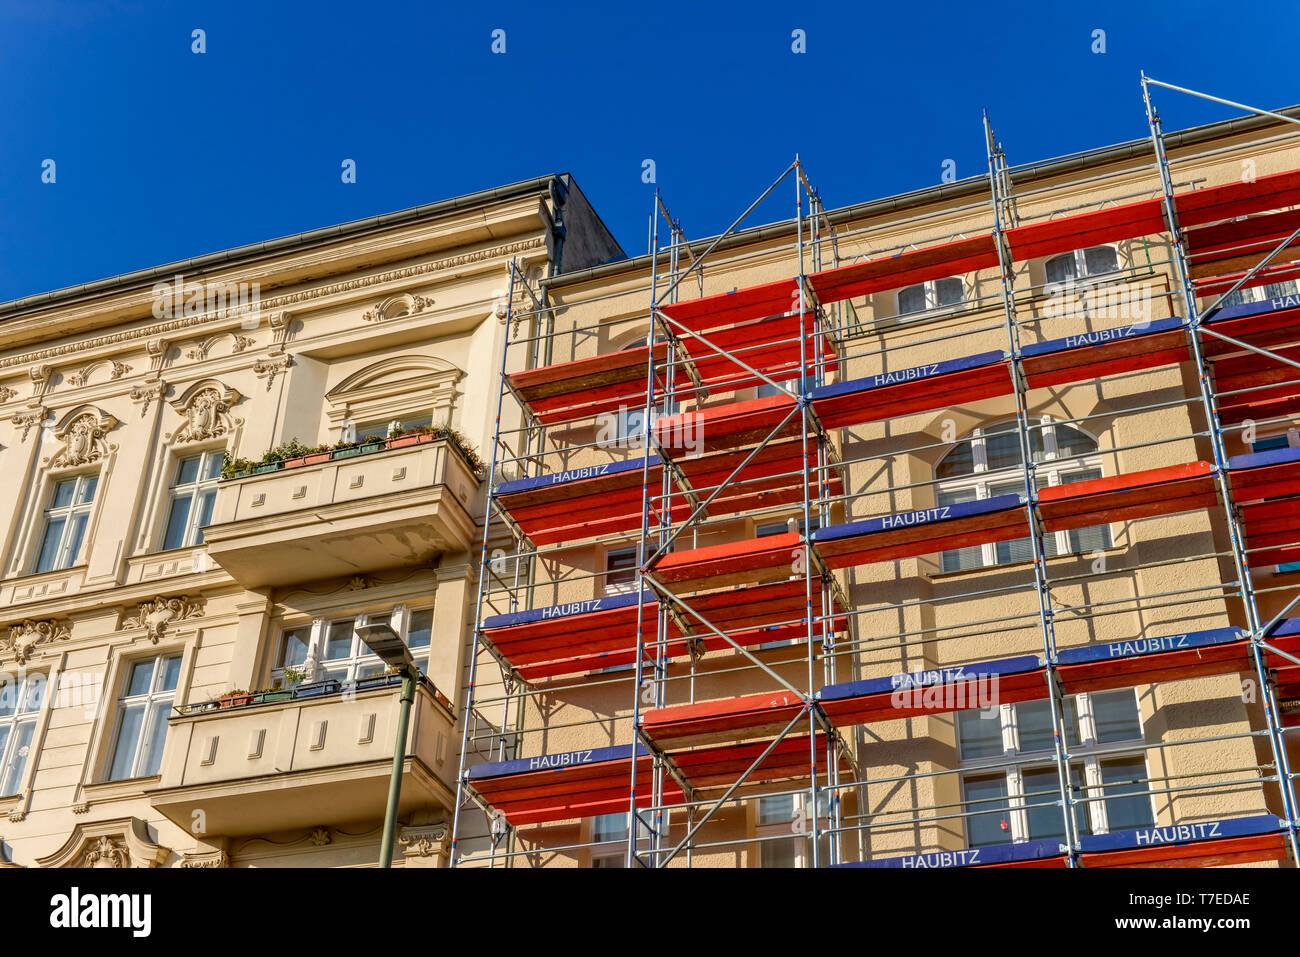 Altbau, Renovierung, Richard-Wagner-Strasse, Charlottenburg, Berlin, Deutschland Stock Photo